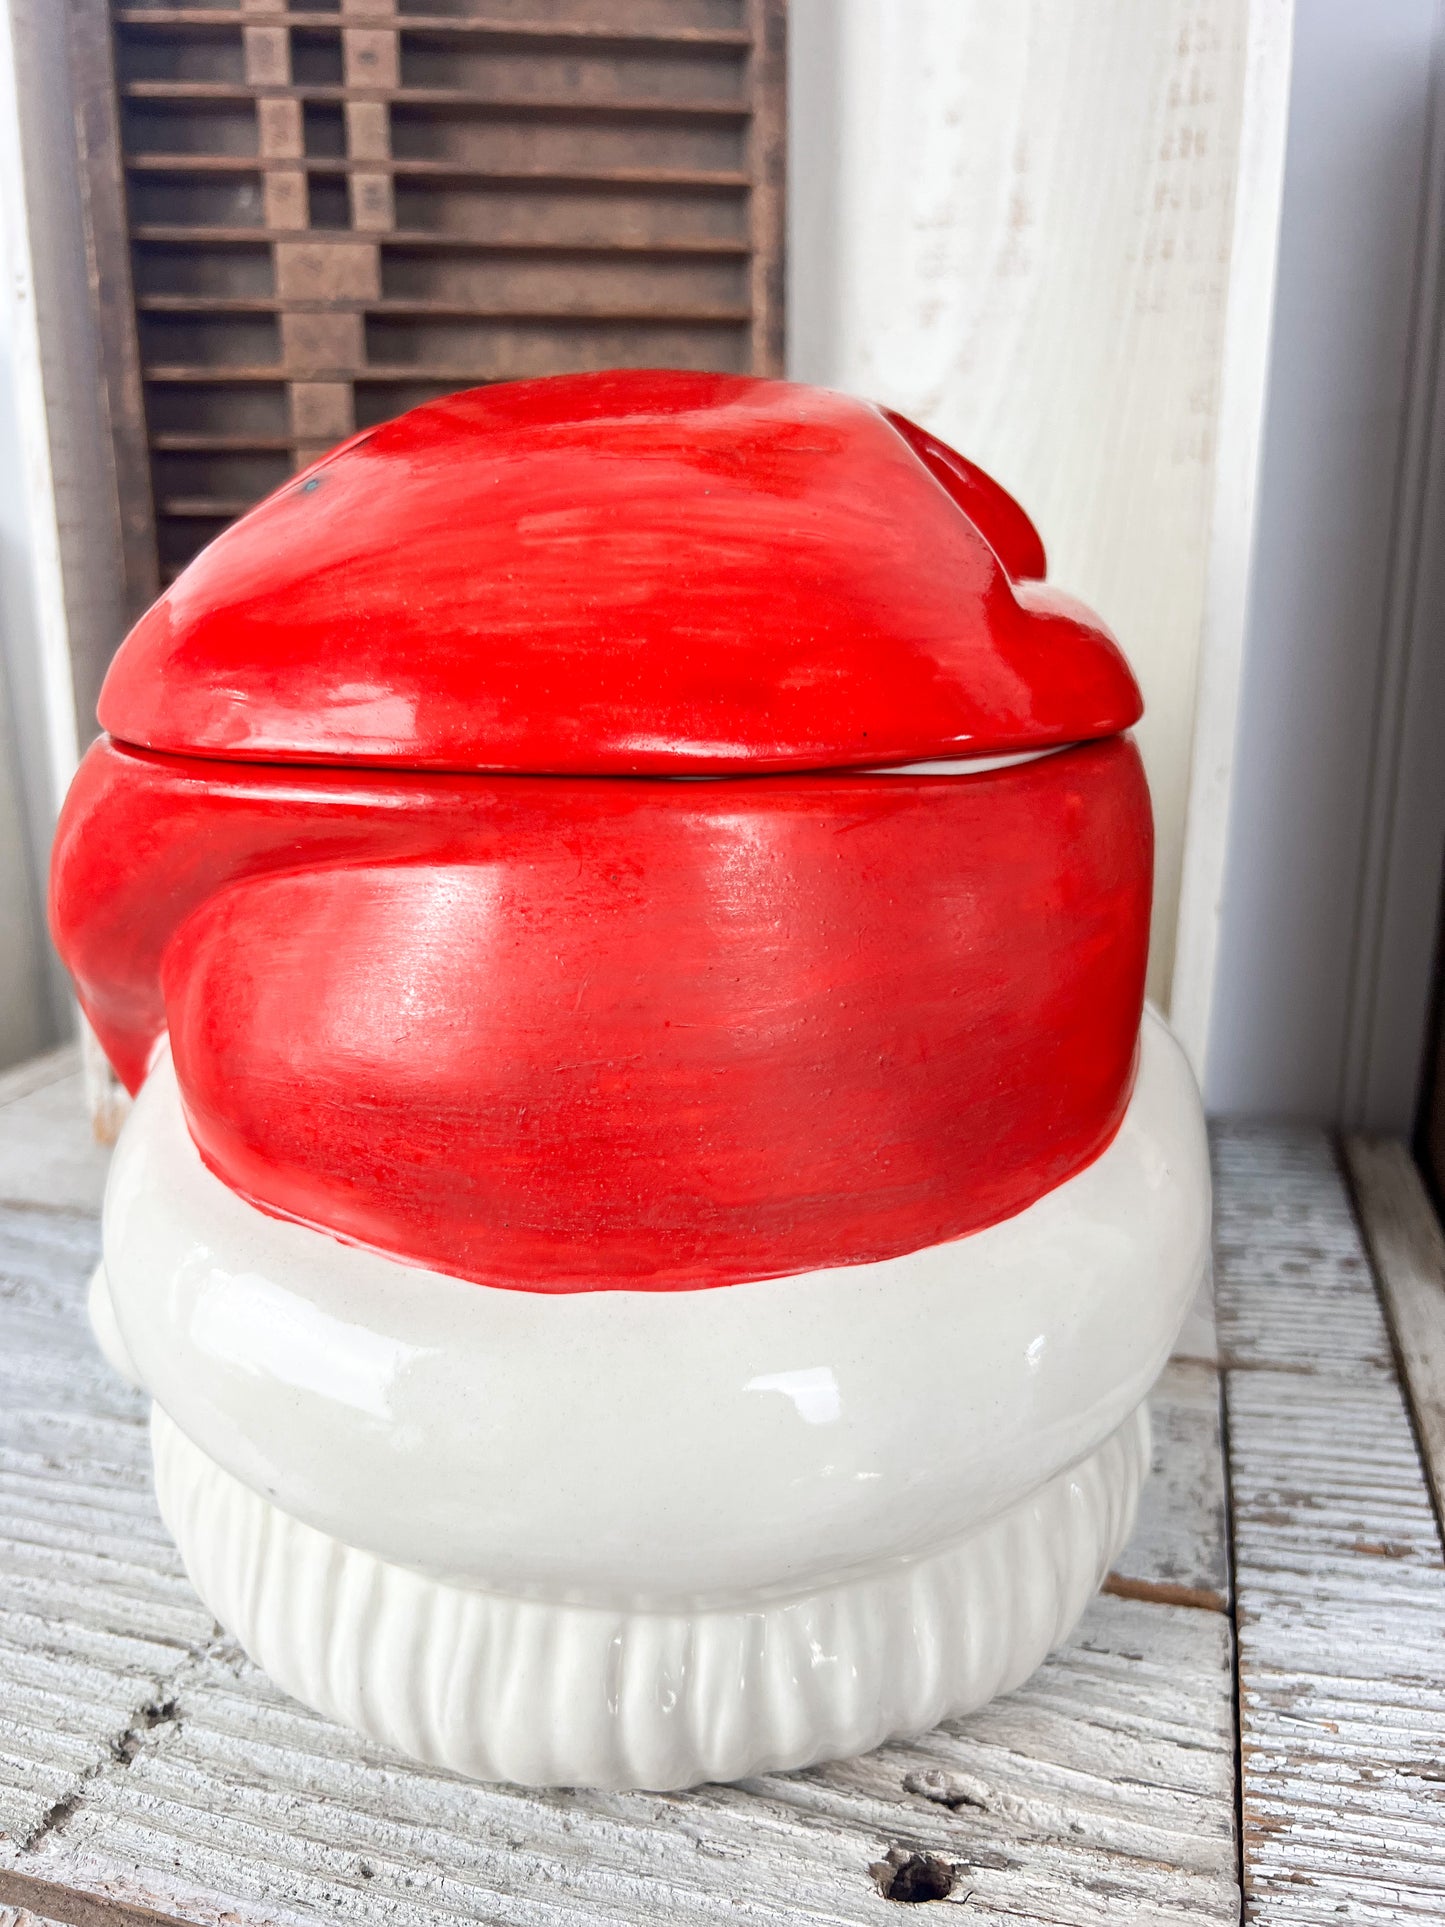 Vintage Santa Head Cookie Jar